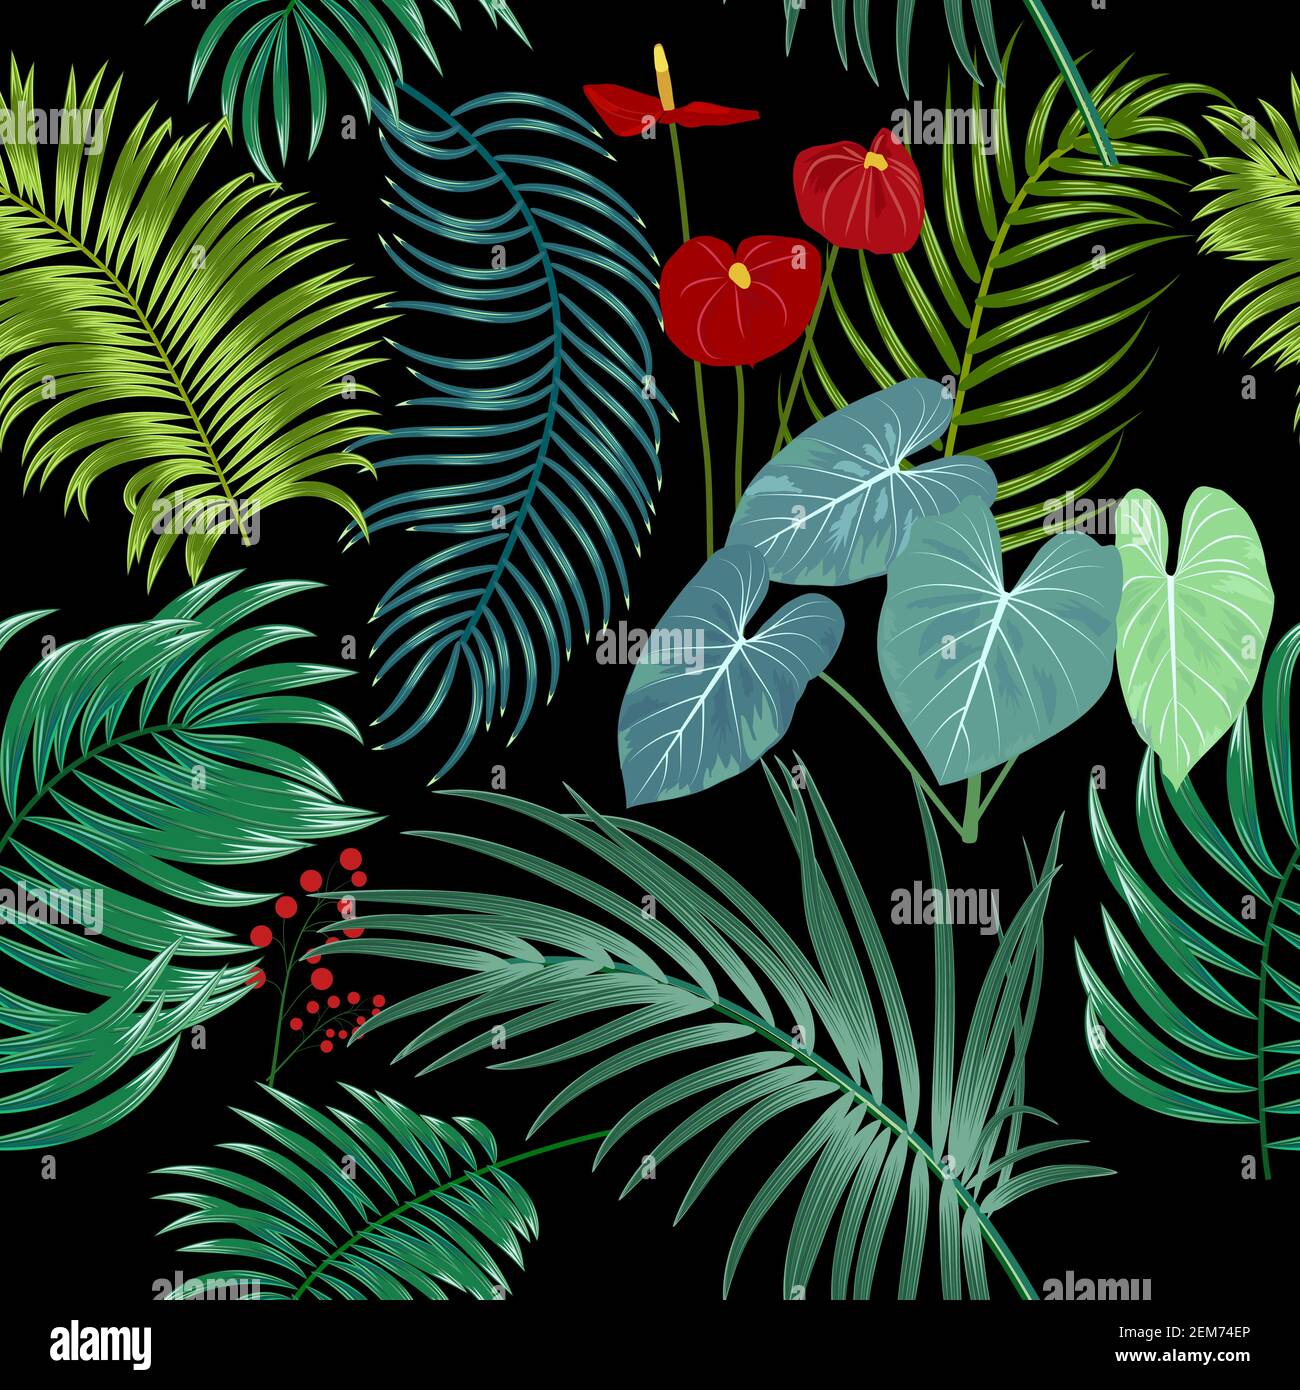 Vettore tropicale modello senza giunture con foglie di palma e fiori. Sfondo chiaro botanica, carta da parati giungla. Illustrazione Vettoriale